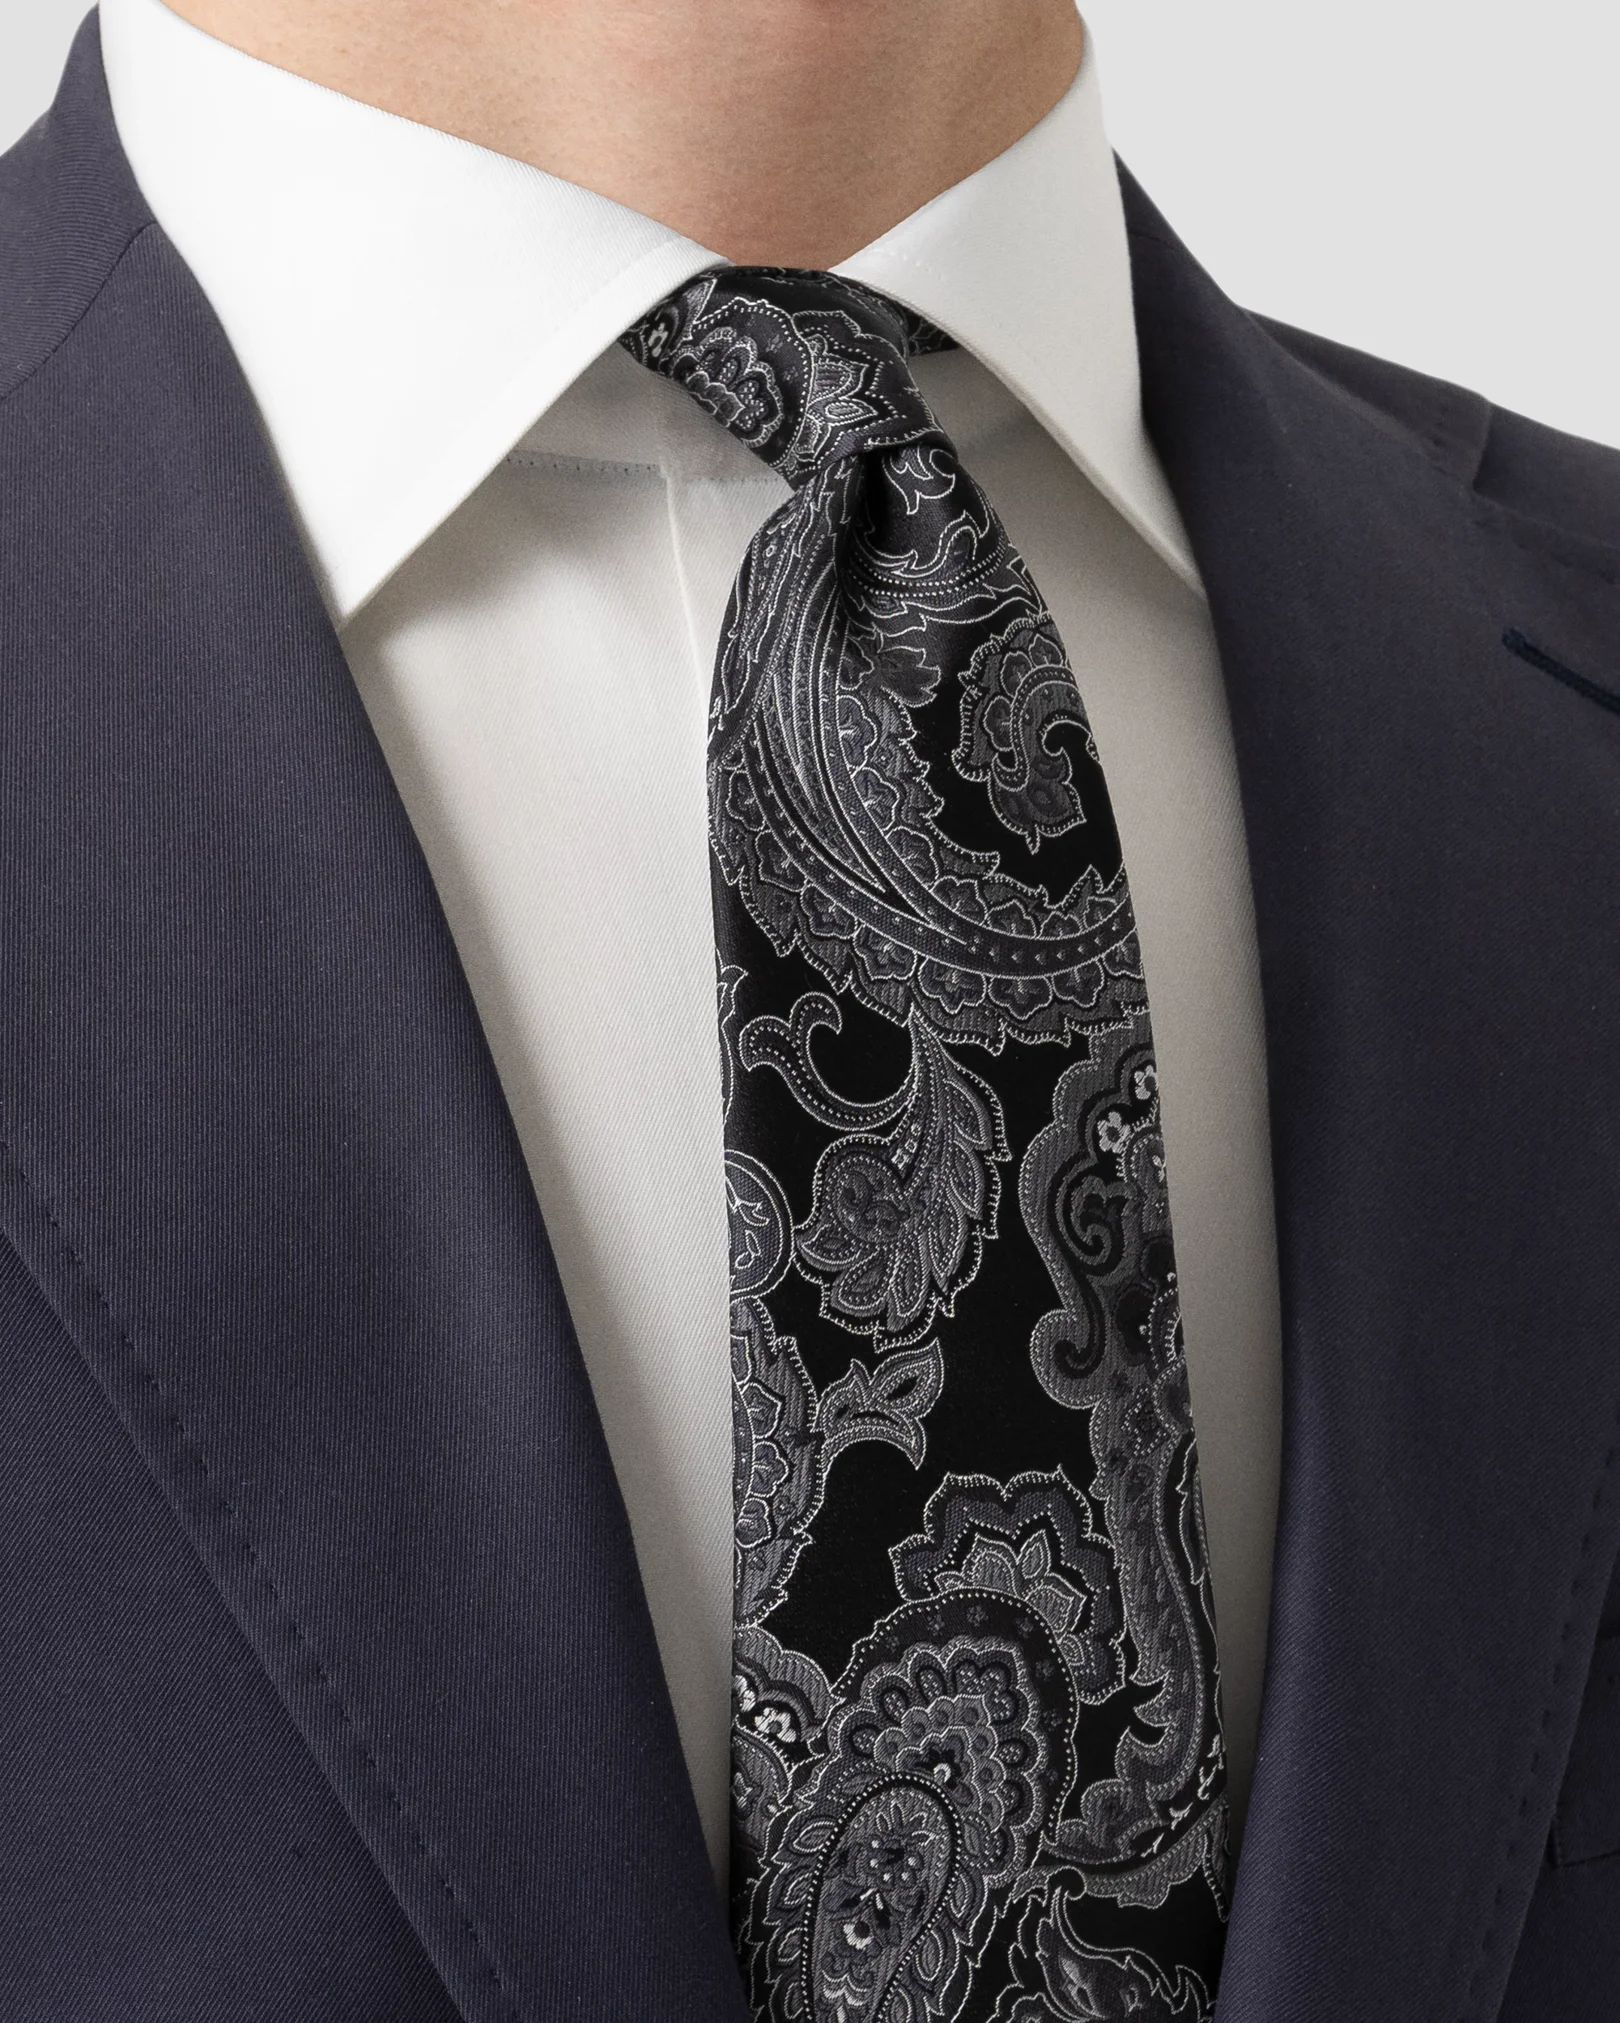 Eton - black jacquard paisley tie